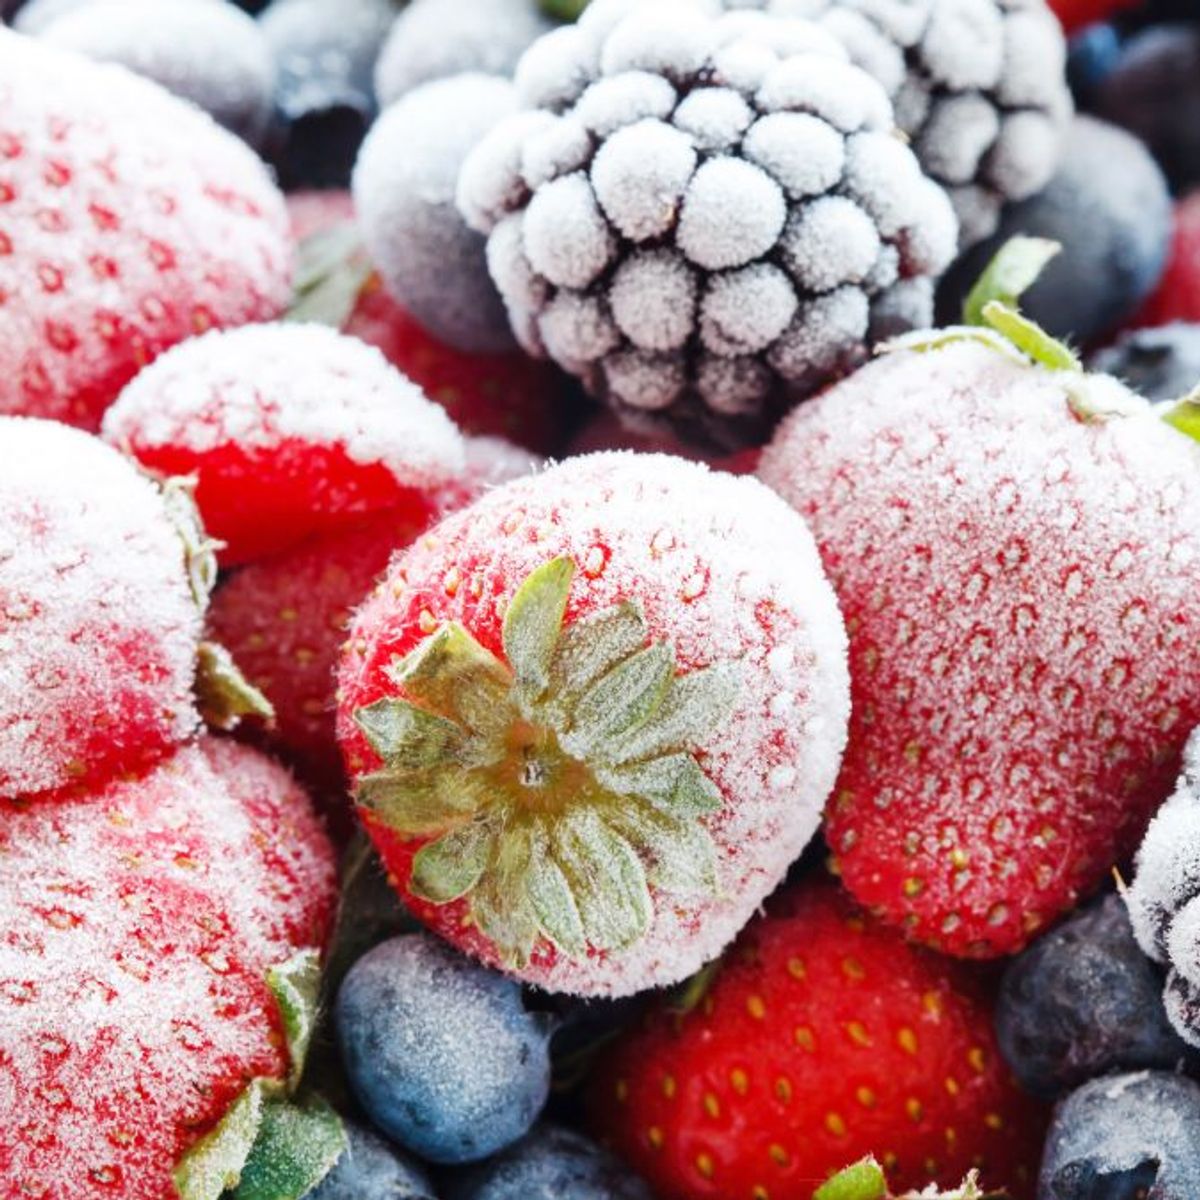 Fruits et légumes : faut-il les choisir frais ou congelés ?